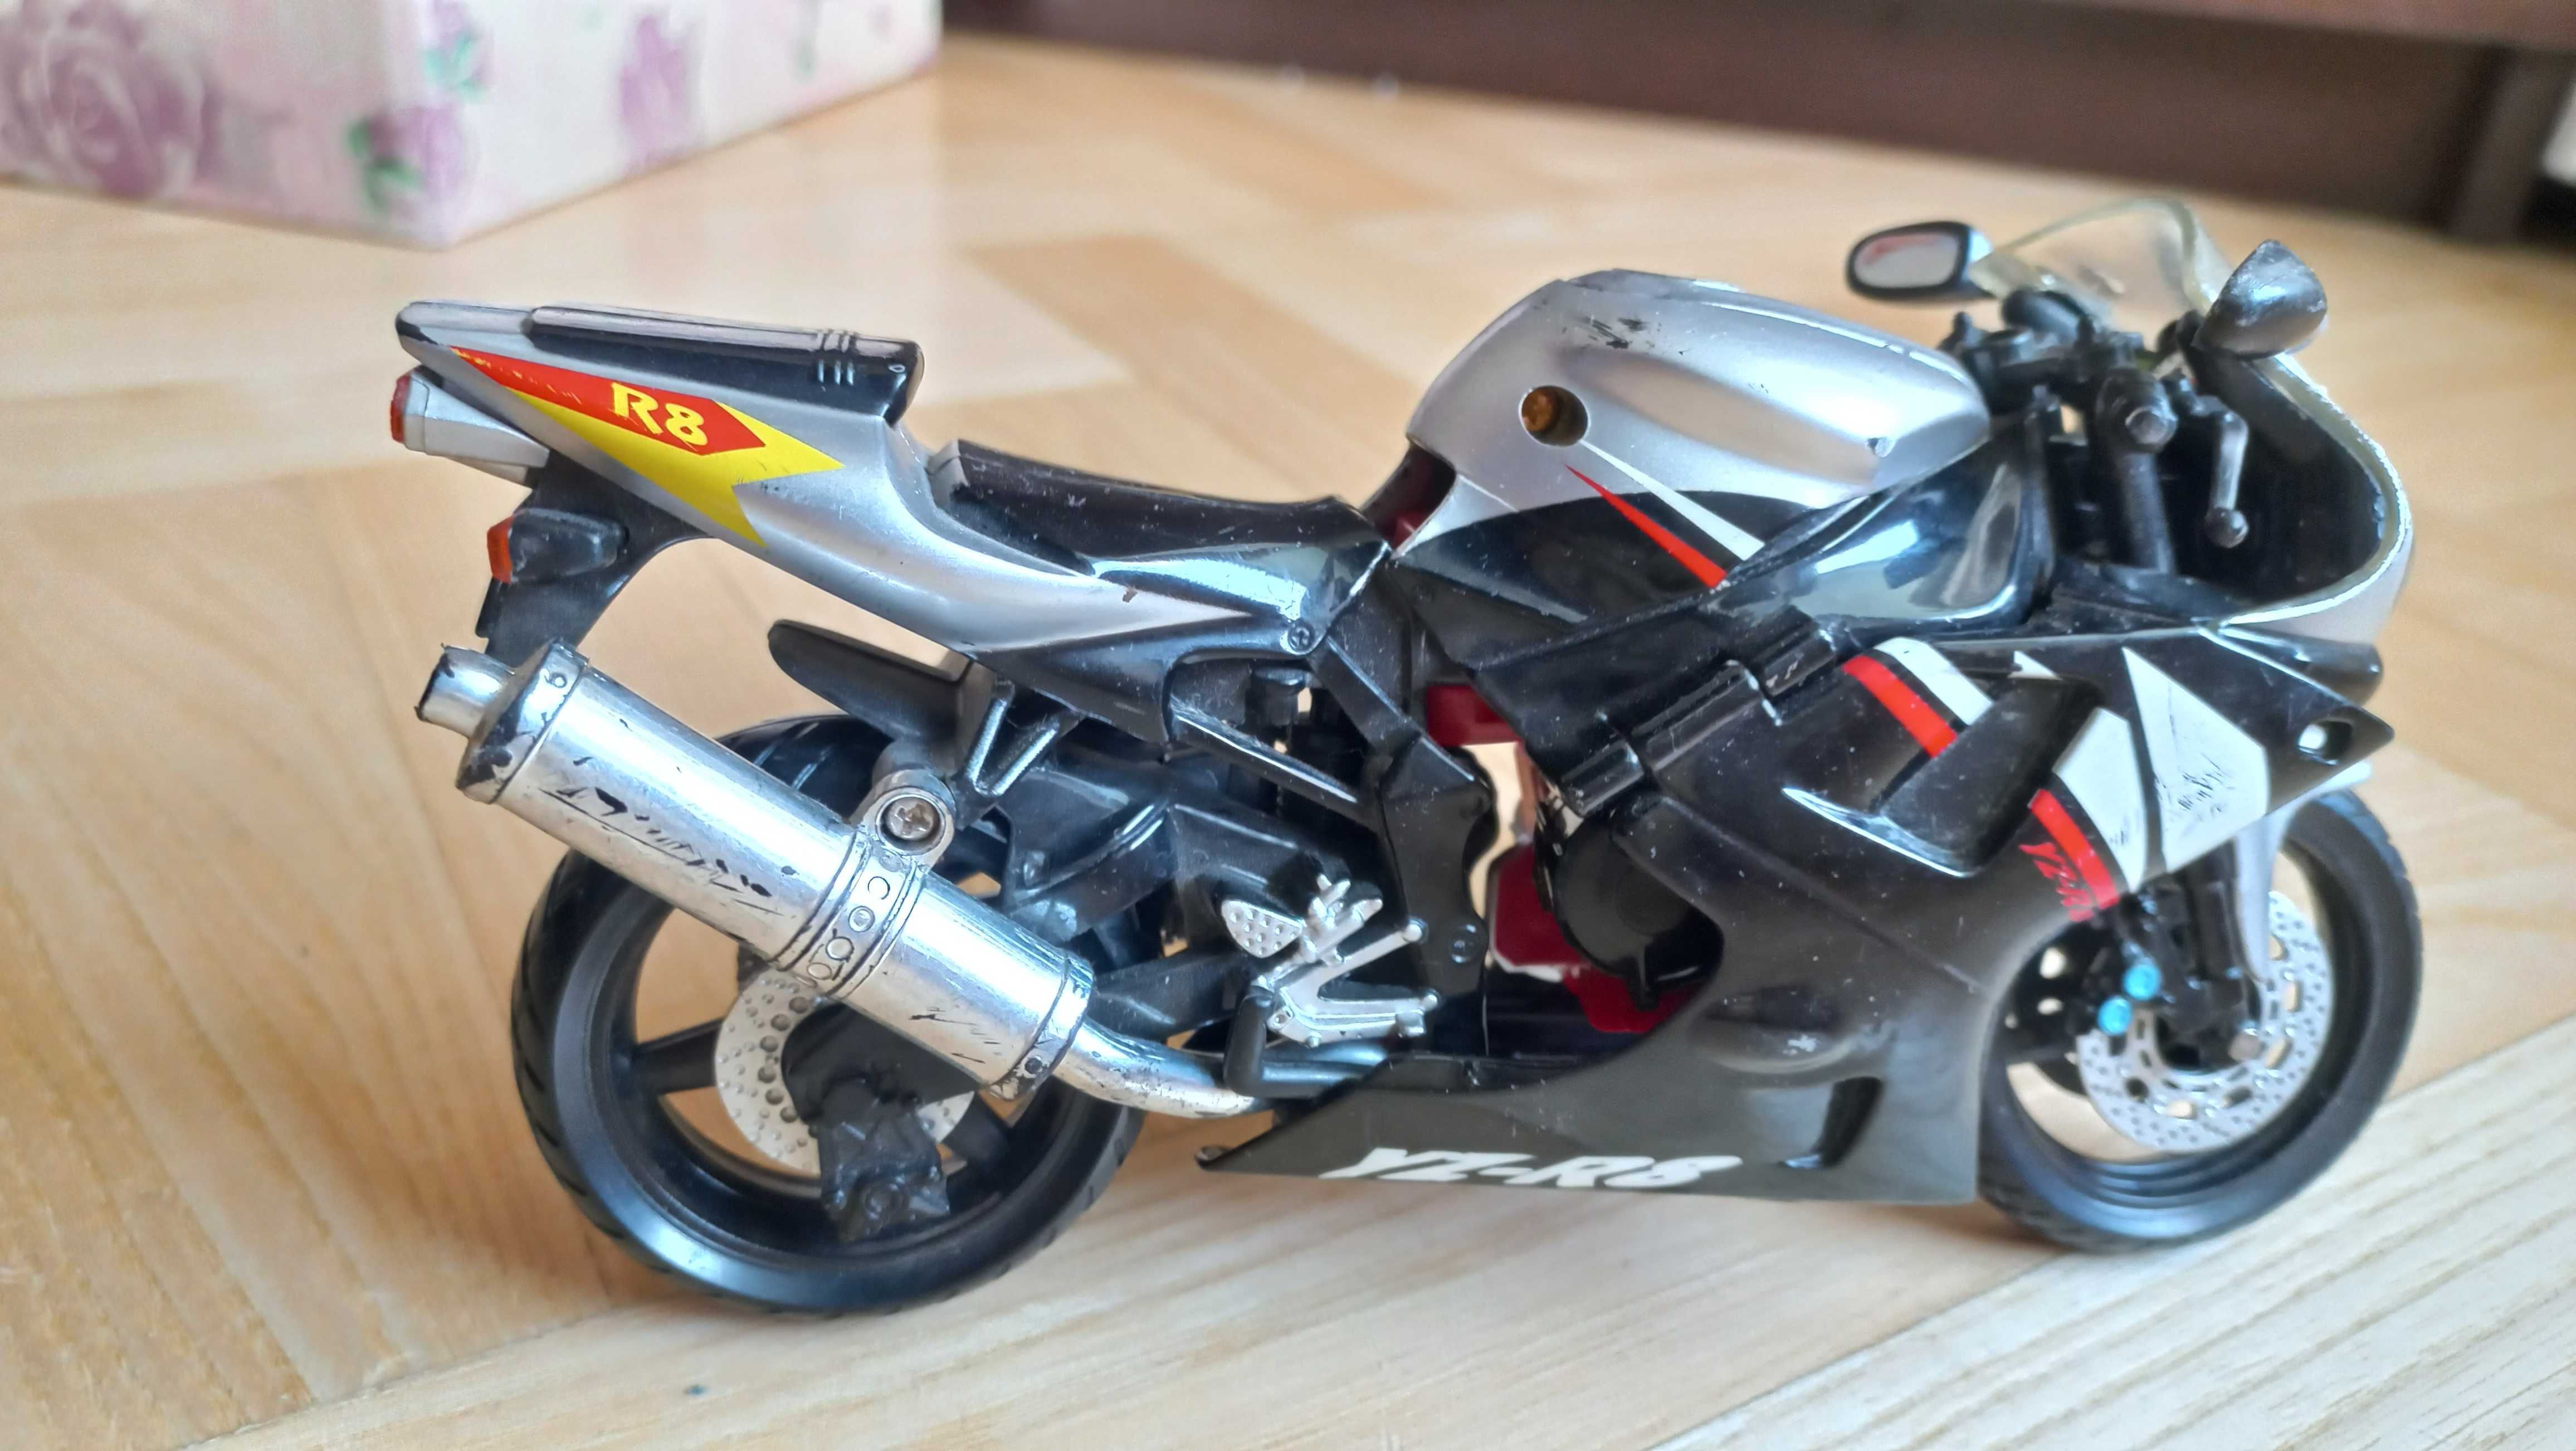 TRANSFORMERS motocykl Yamaha R8 * ŁADNY